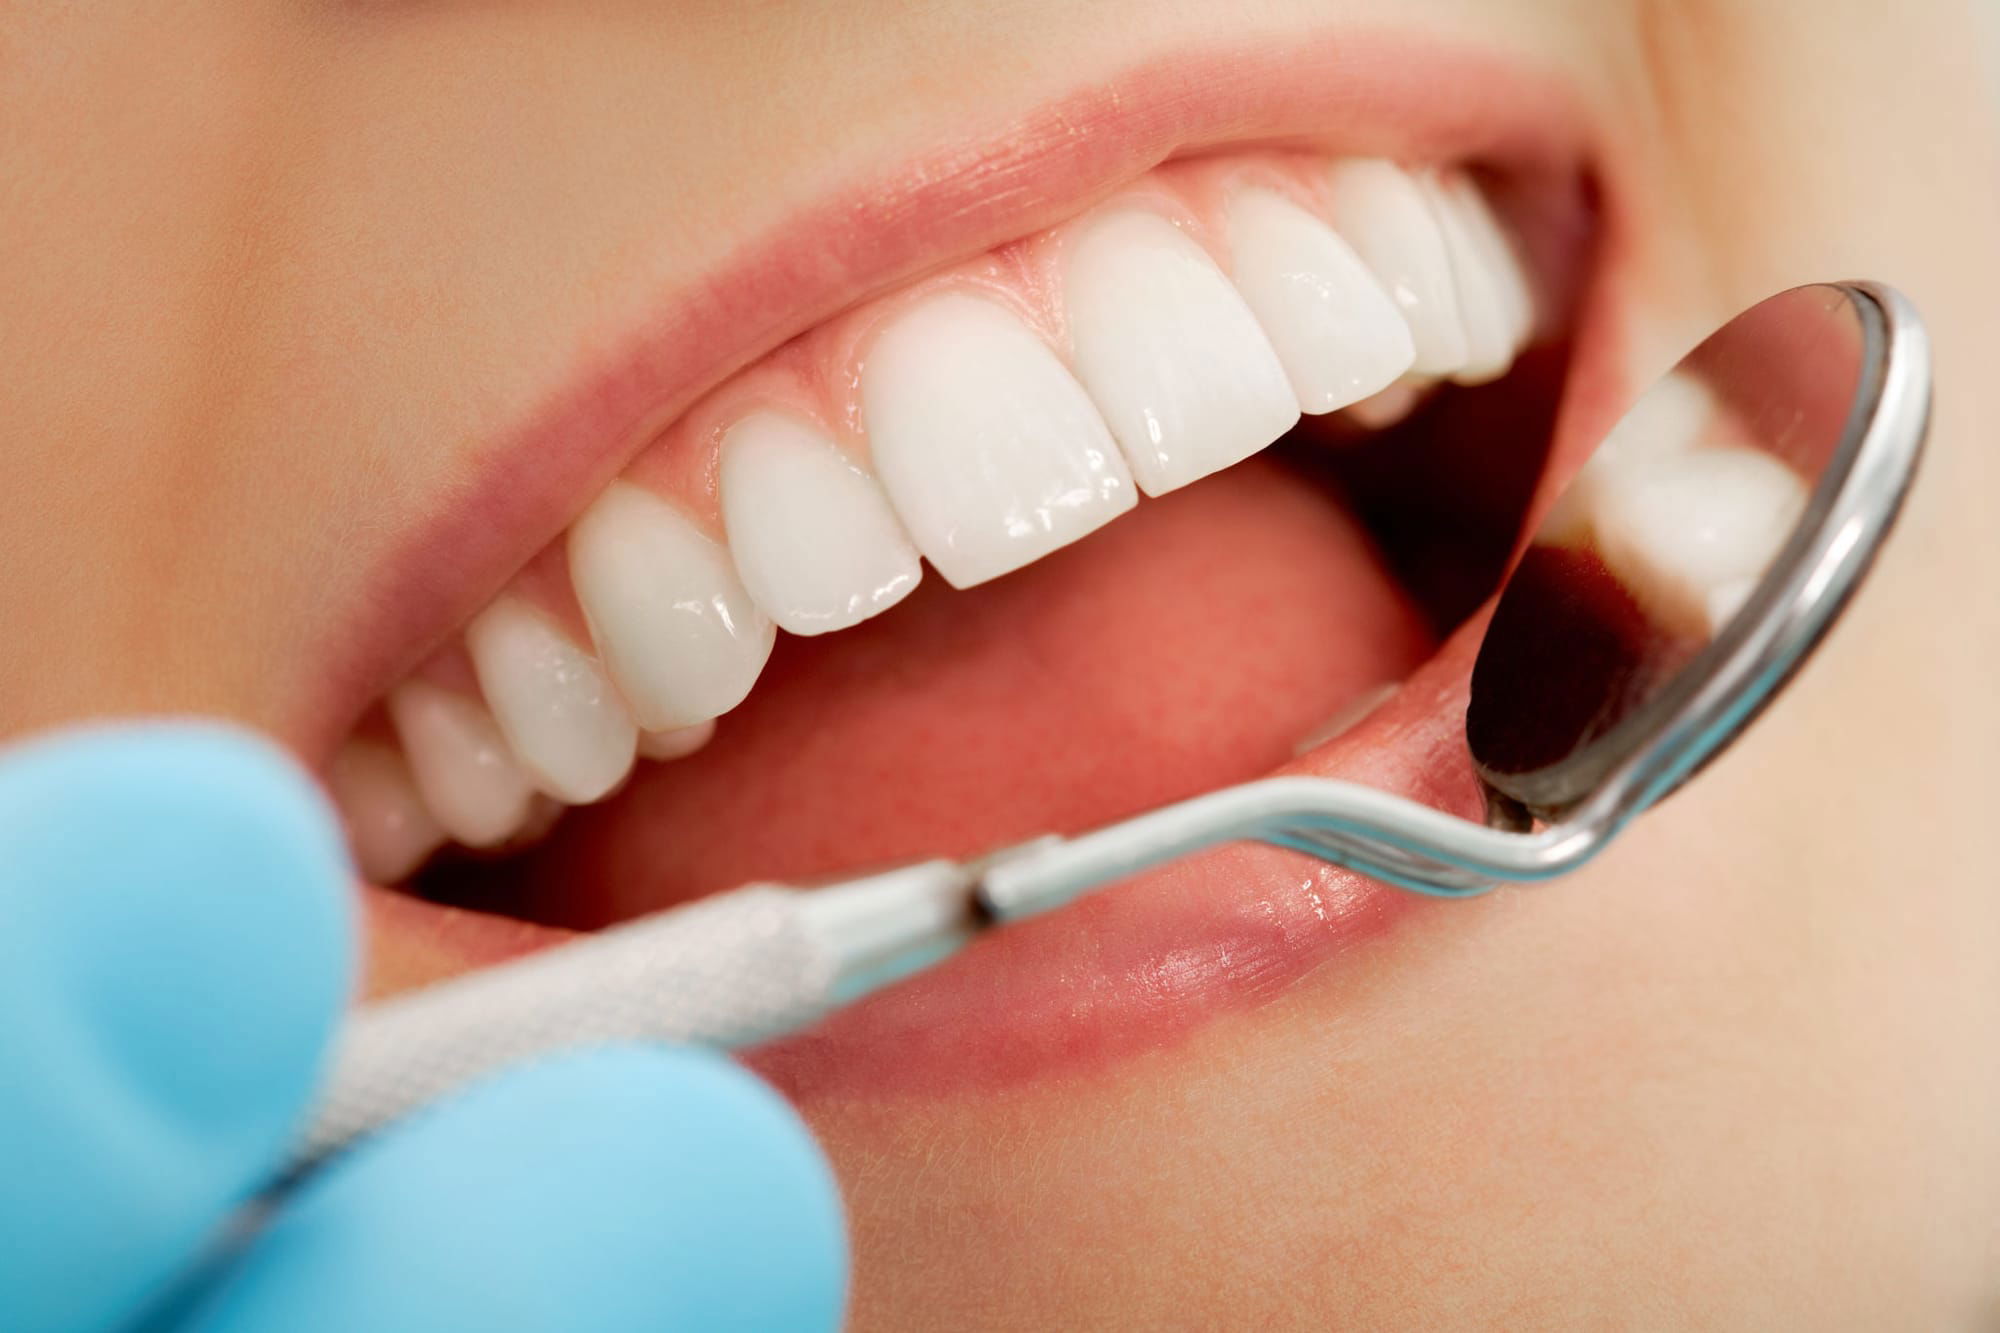 نظافة الفم البسيطة قد تقلل من احتمالية وصول SARS-CoV-2 إلى الرئتين ومن شدة "كوفيد-19"